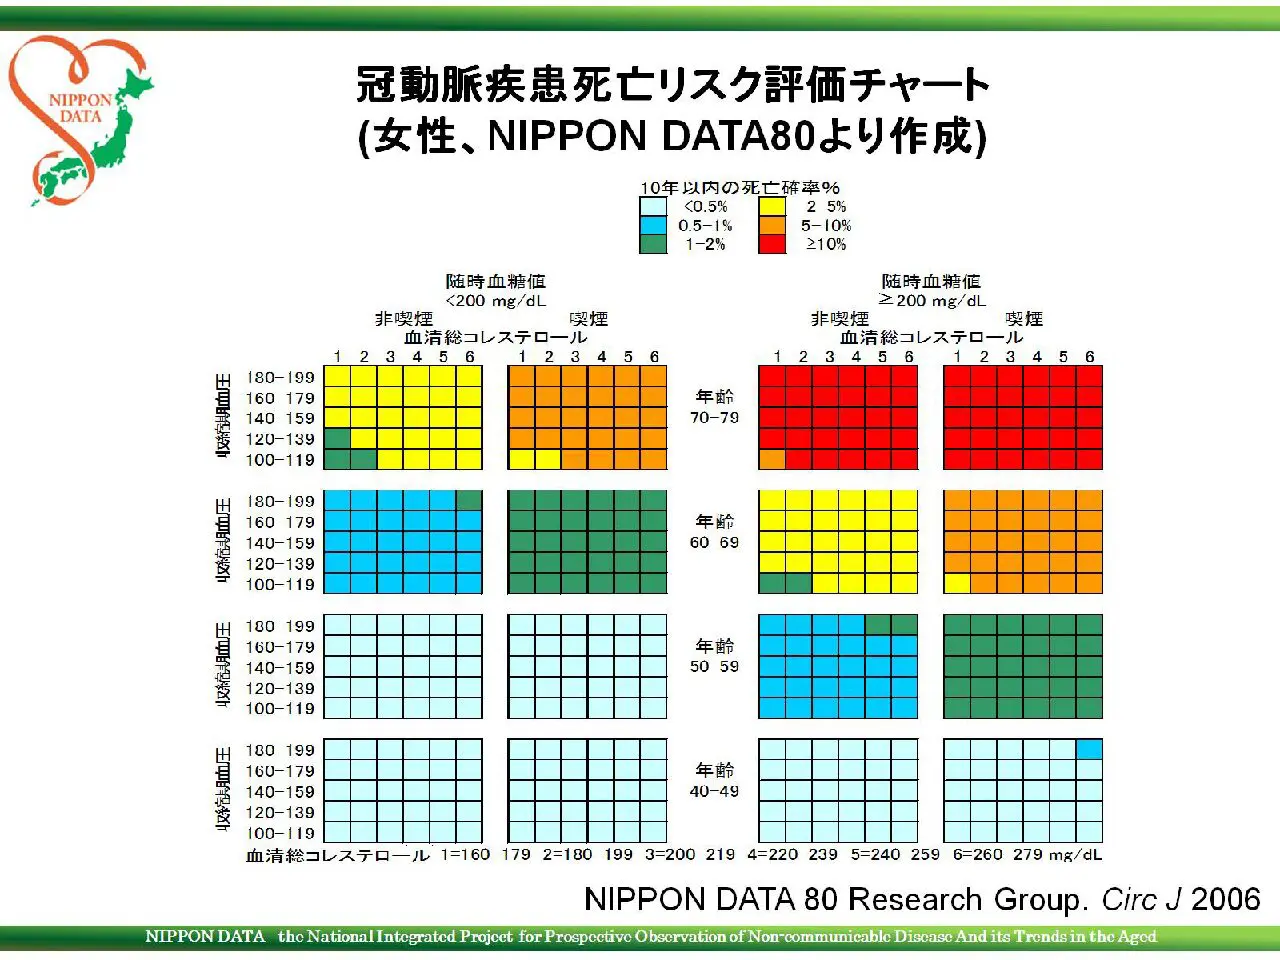 冠動脈疾患死亡リスク評価チャート（ NIPPON DATA80，女性 ） - NIPPON 